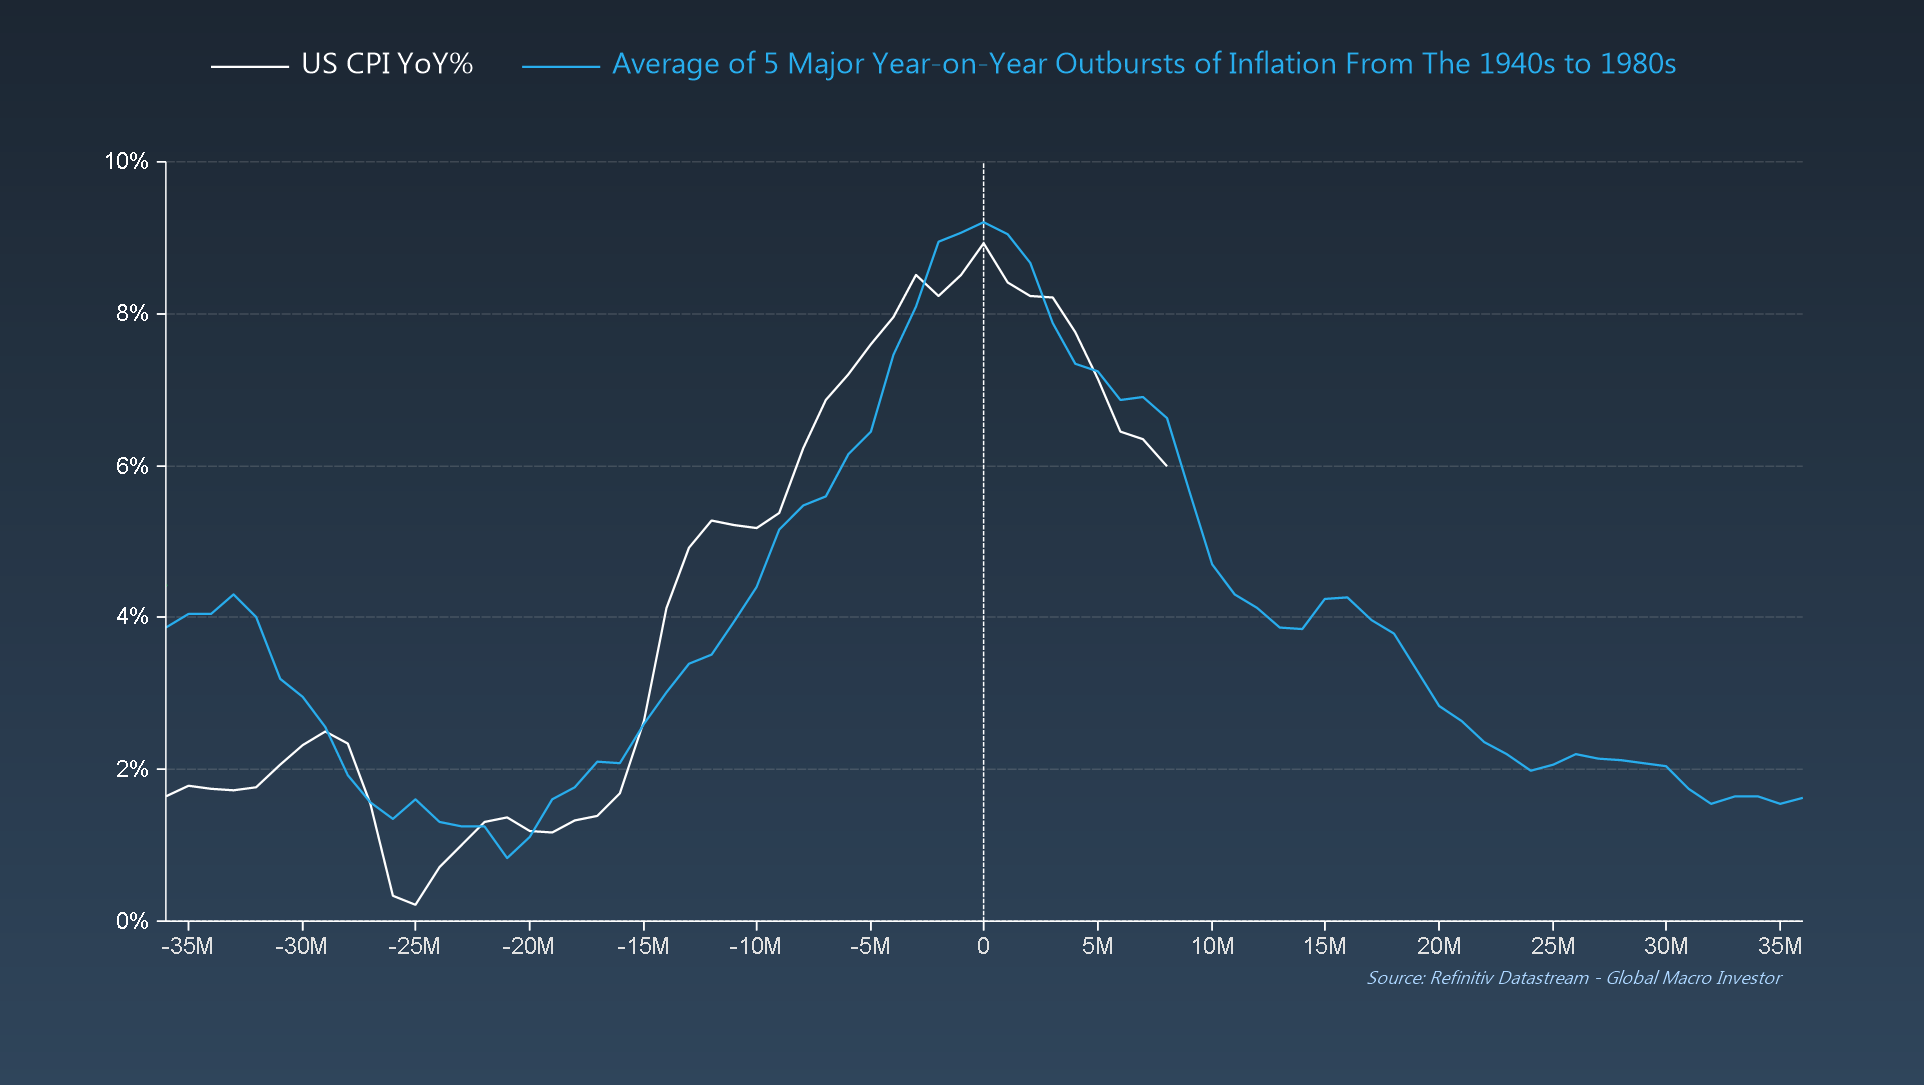 ИПЦ США ​​по сравнению со средним значением 5 крупных всплесков инфляции в годовом исчислении